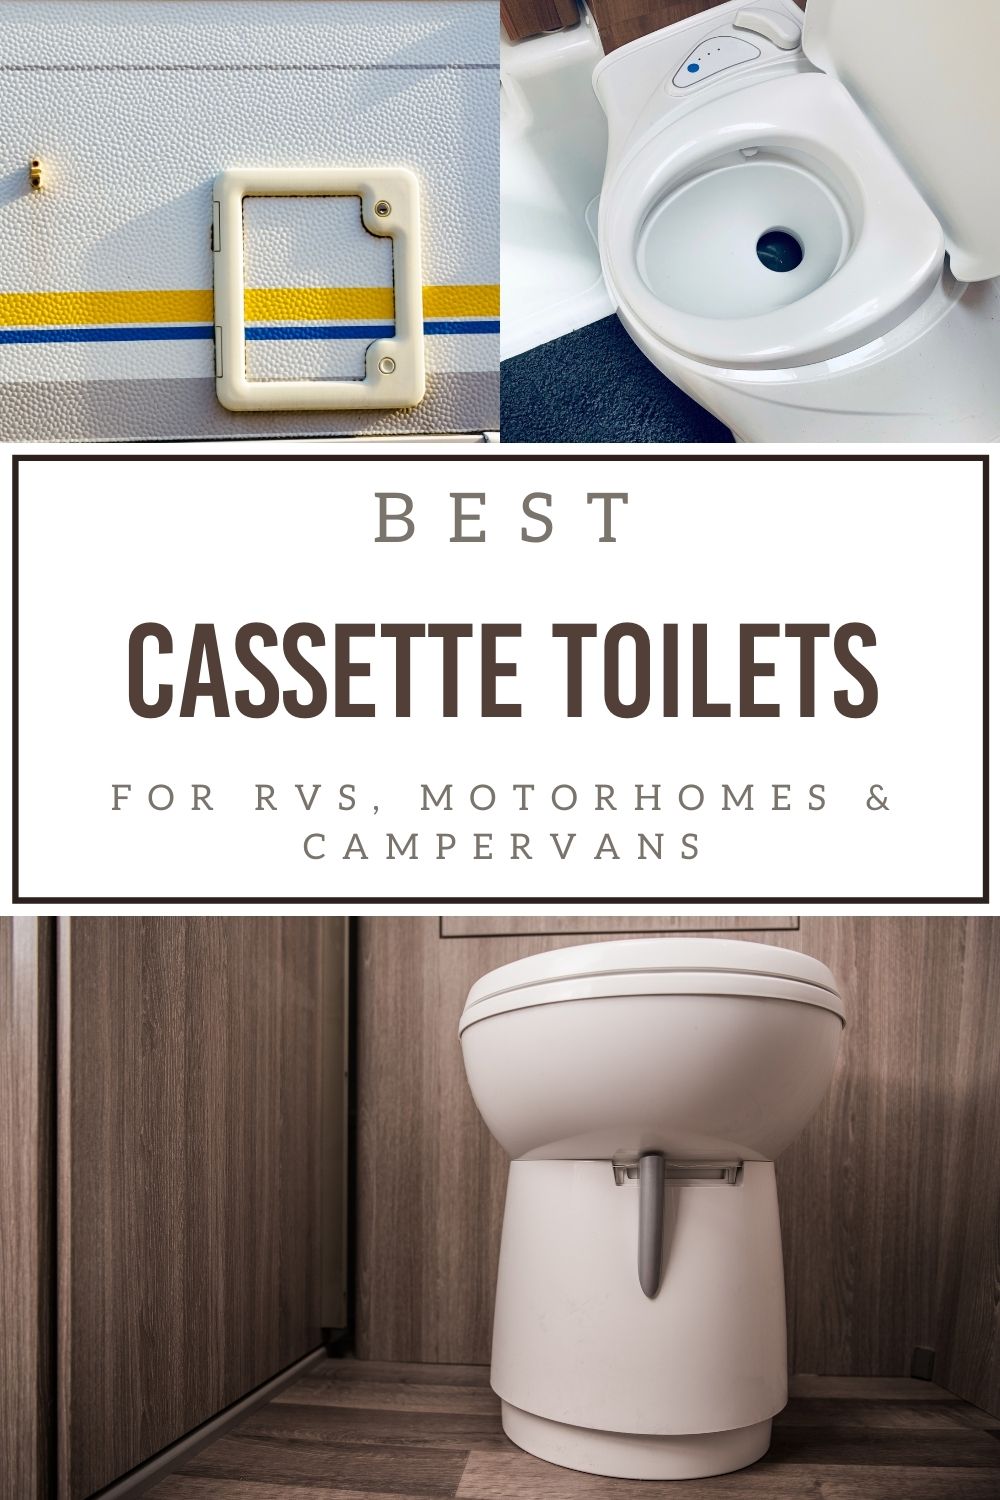 cassette toilet for rv and campervans on pinterest